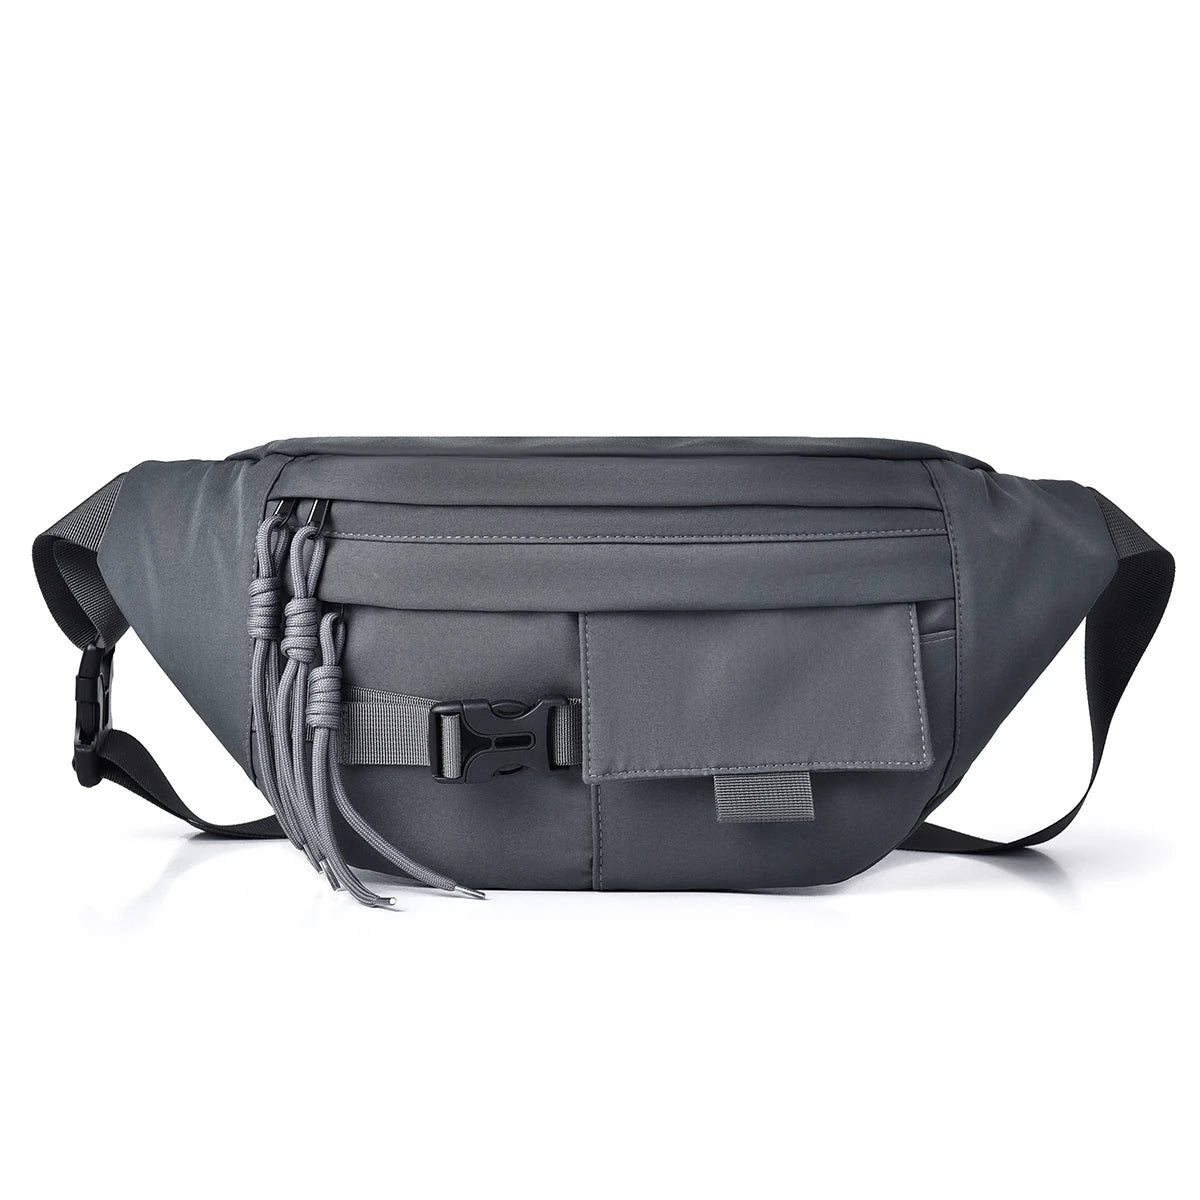 crossbody bag shoulder bag travel bag every day handbag